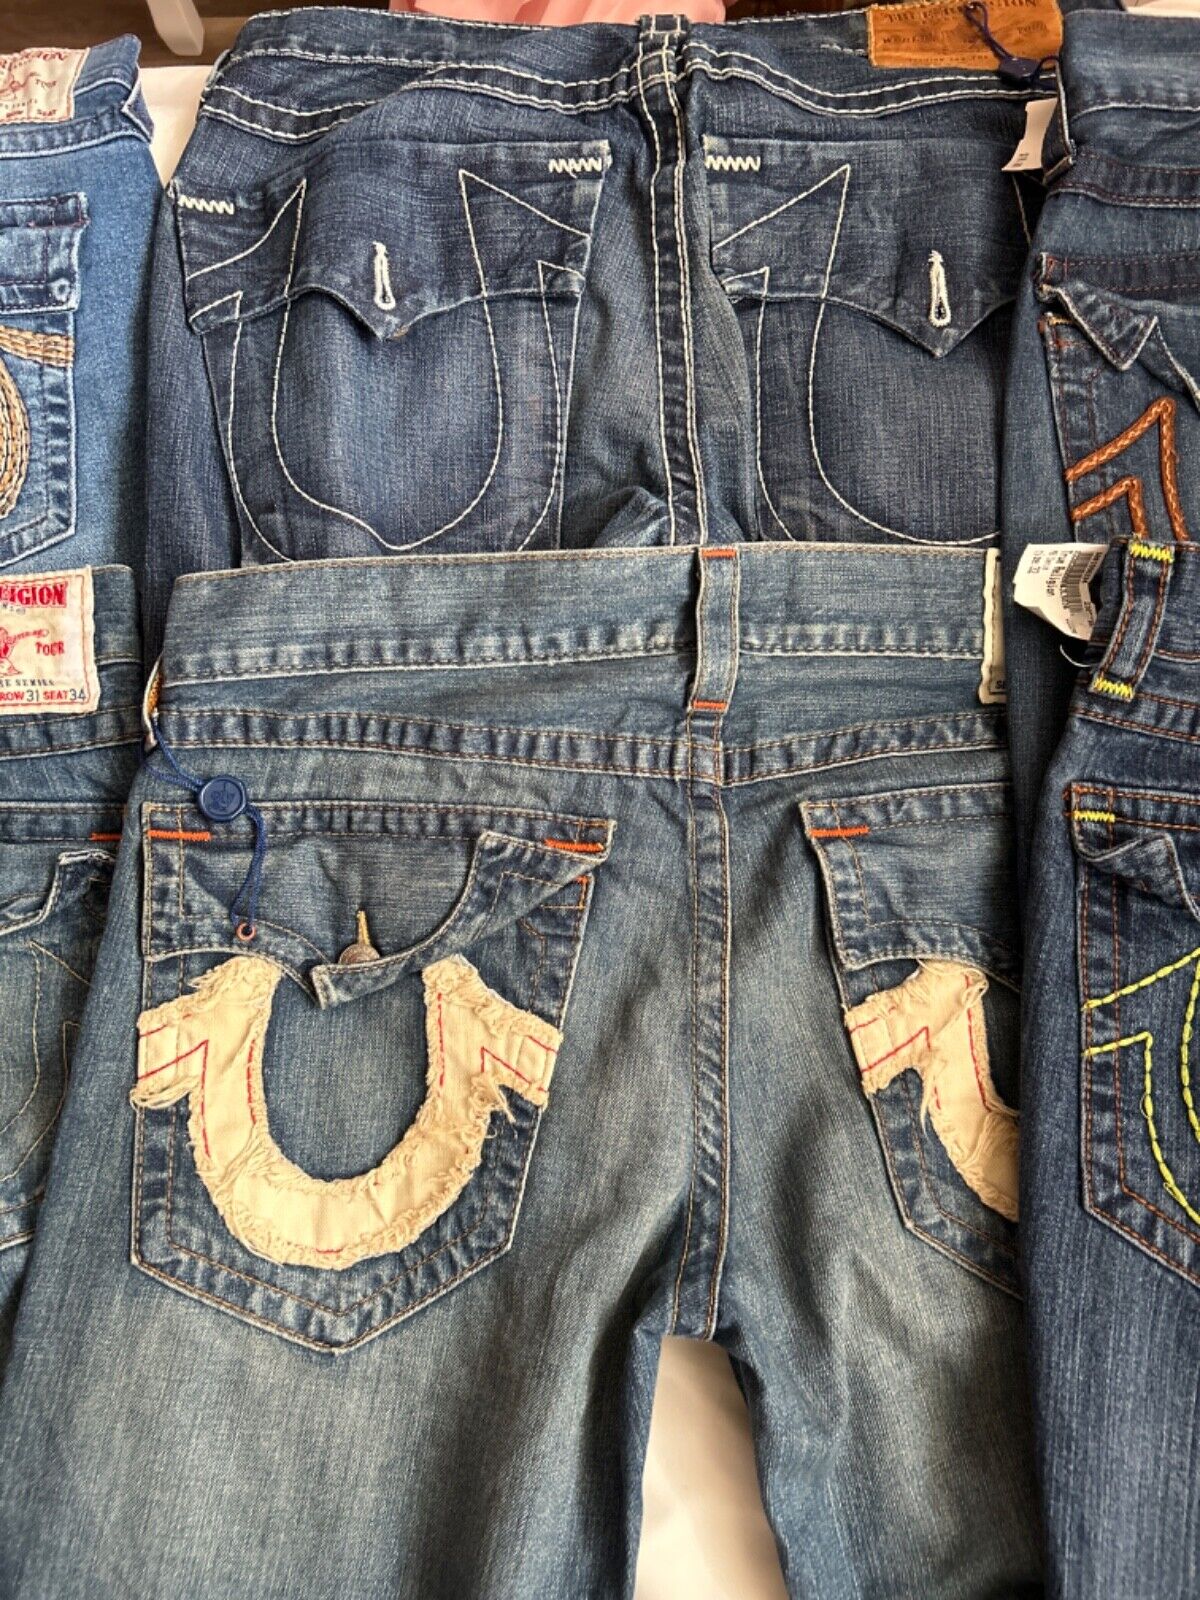 Bundle lot of 6 vintage true religion jeans 